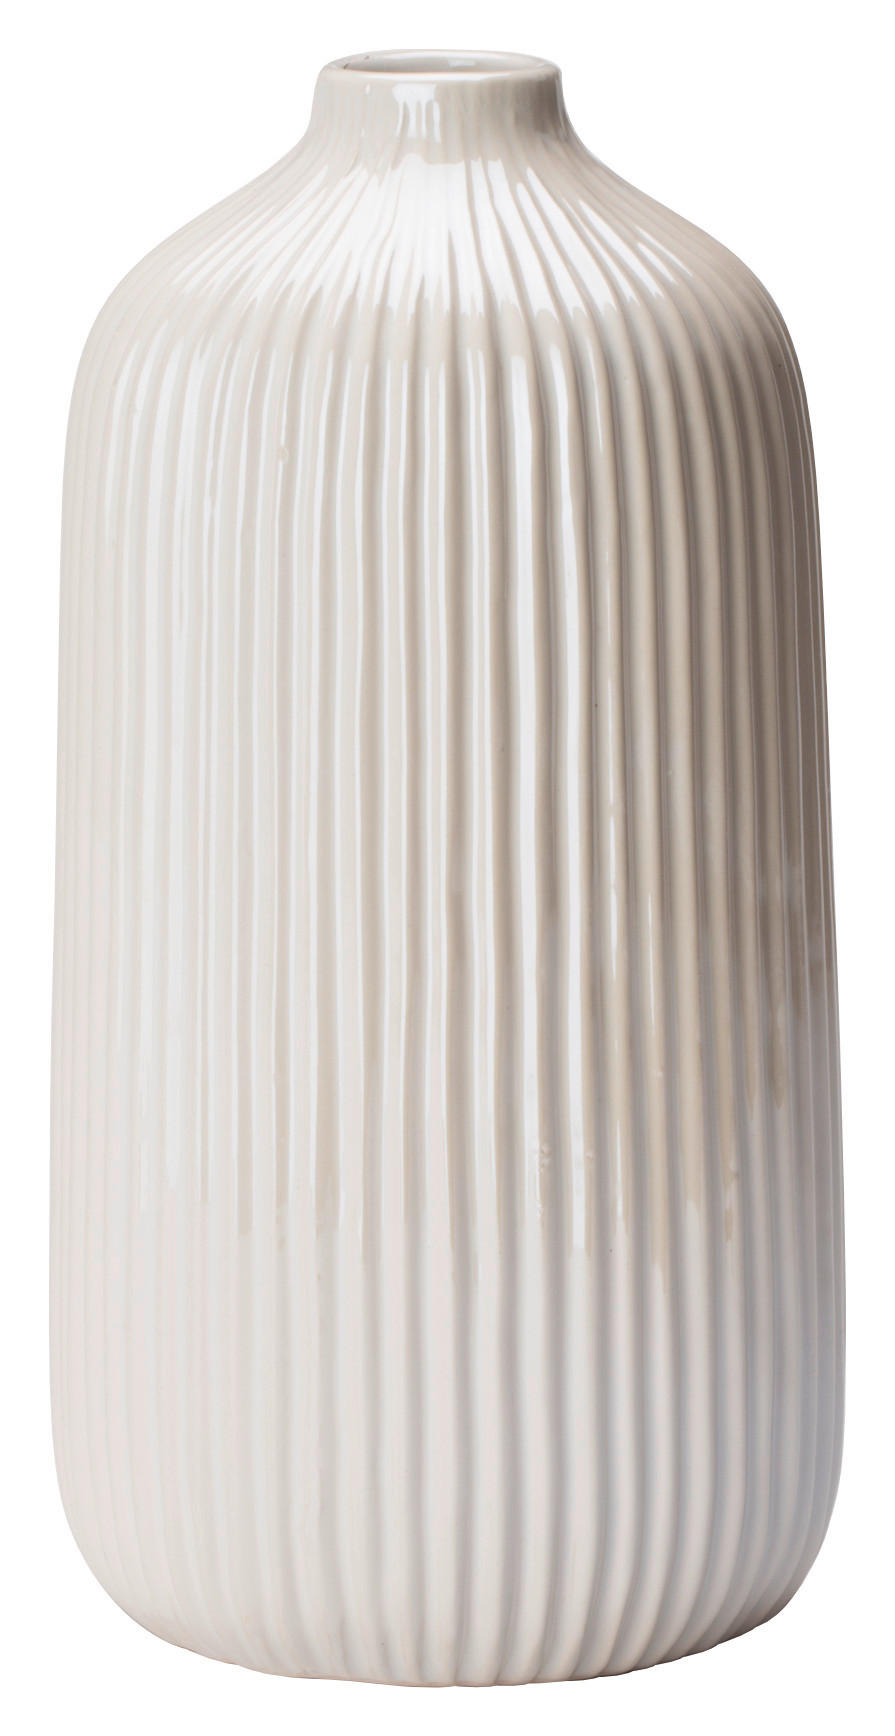 VAS    10,5/21,5 cm  - vit, Design, keramik (10,5/21,5cm) - Ambia Home